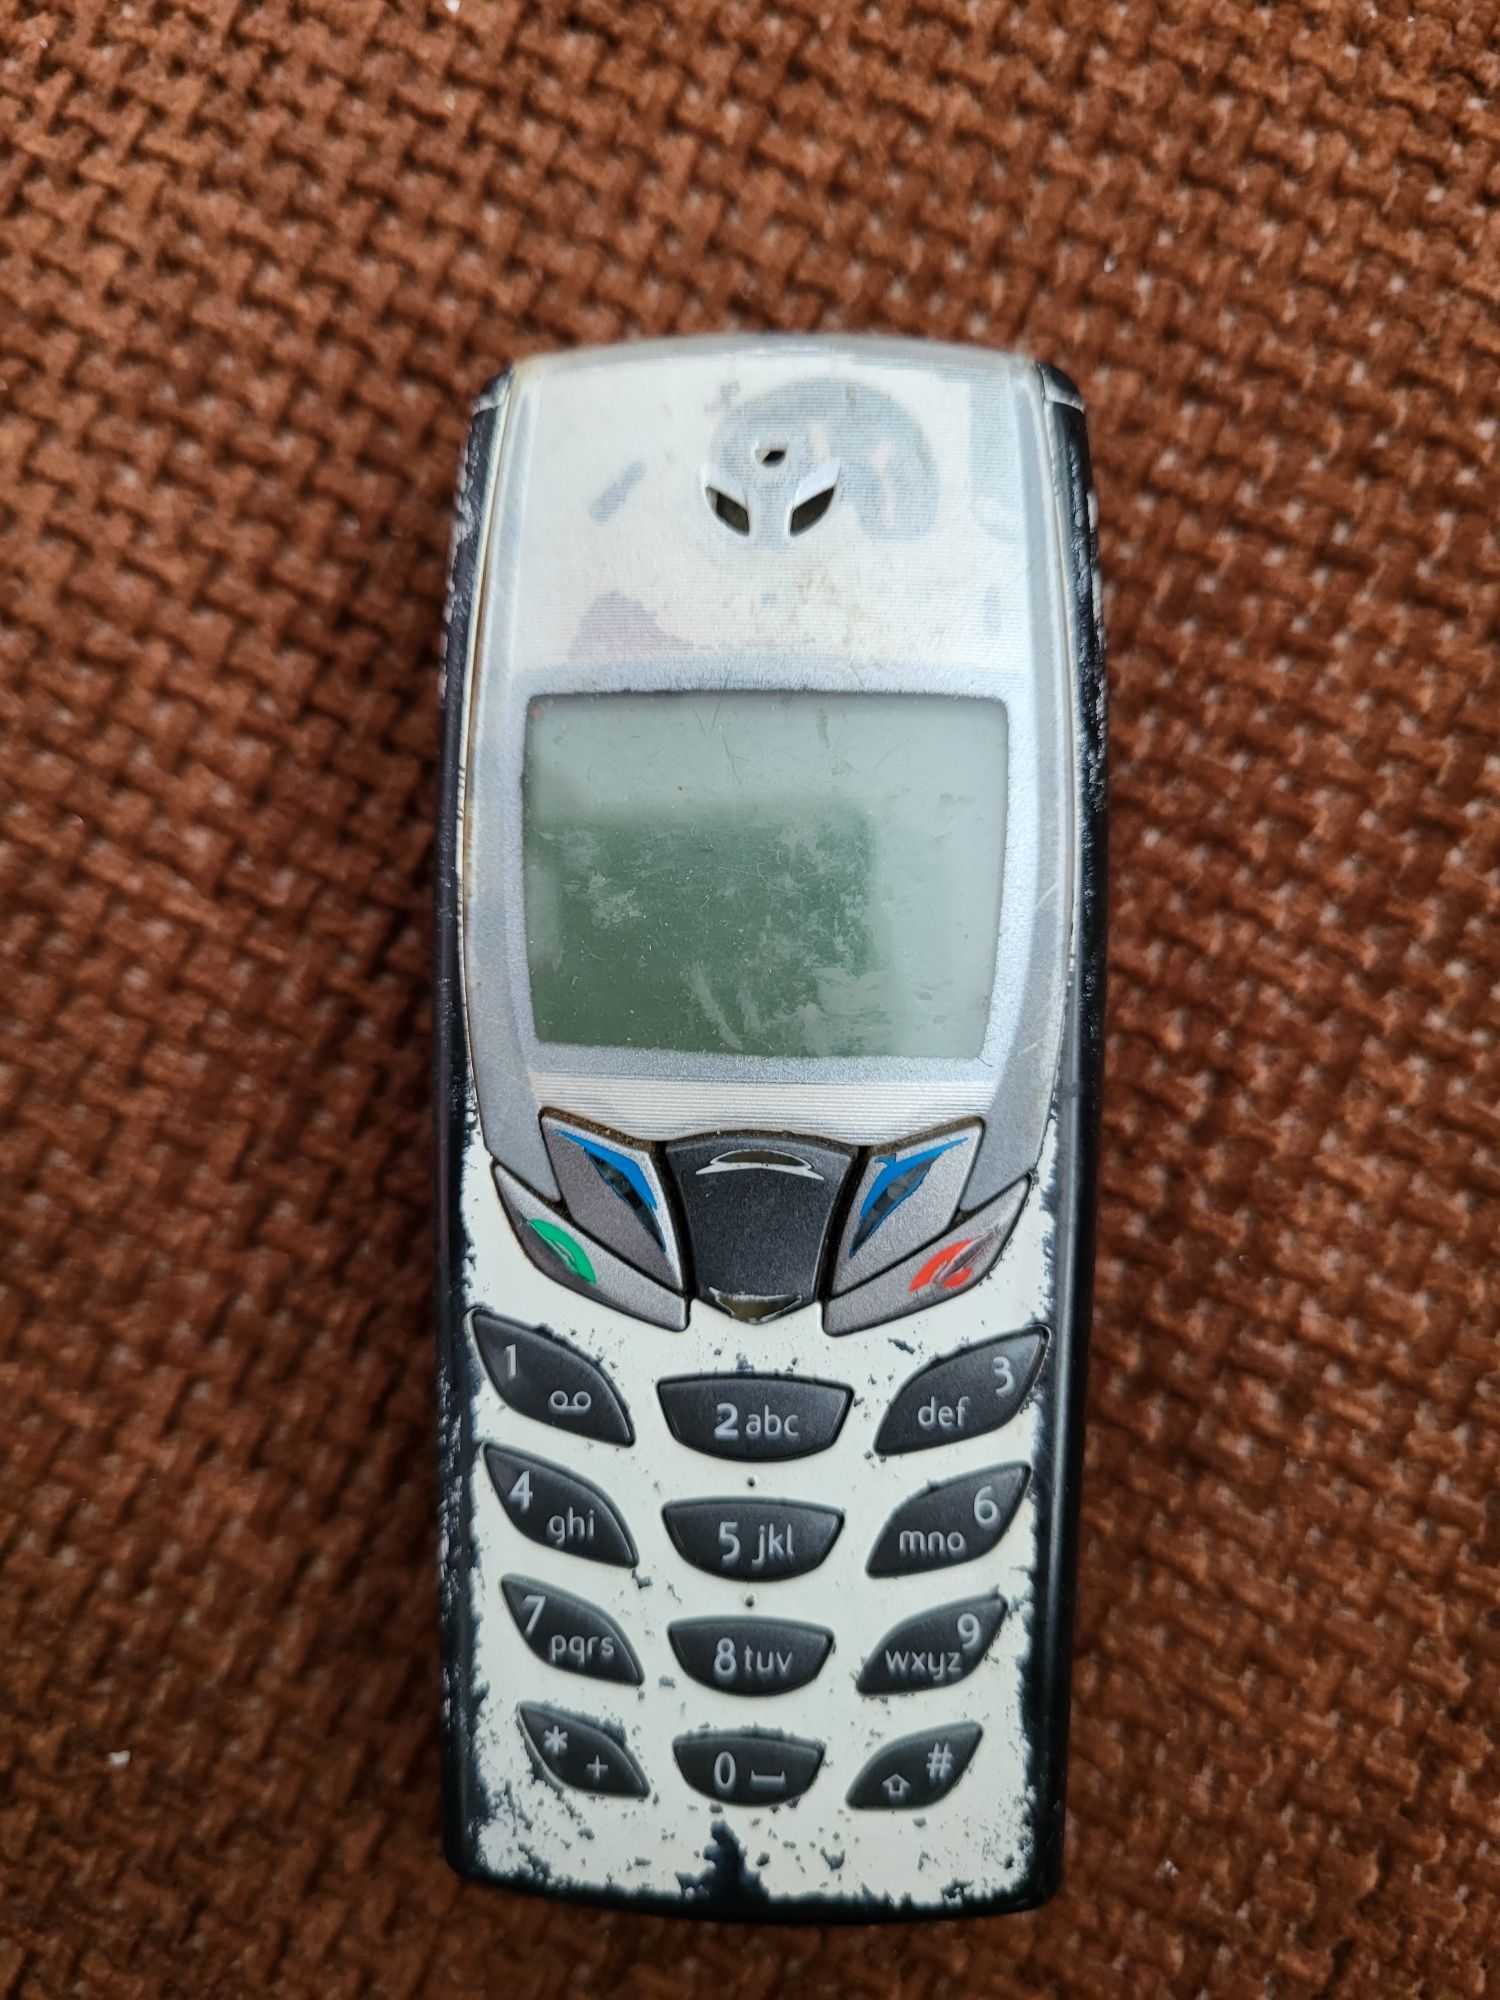 Нокия 6510 ,Nokia 6510